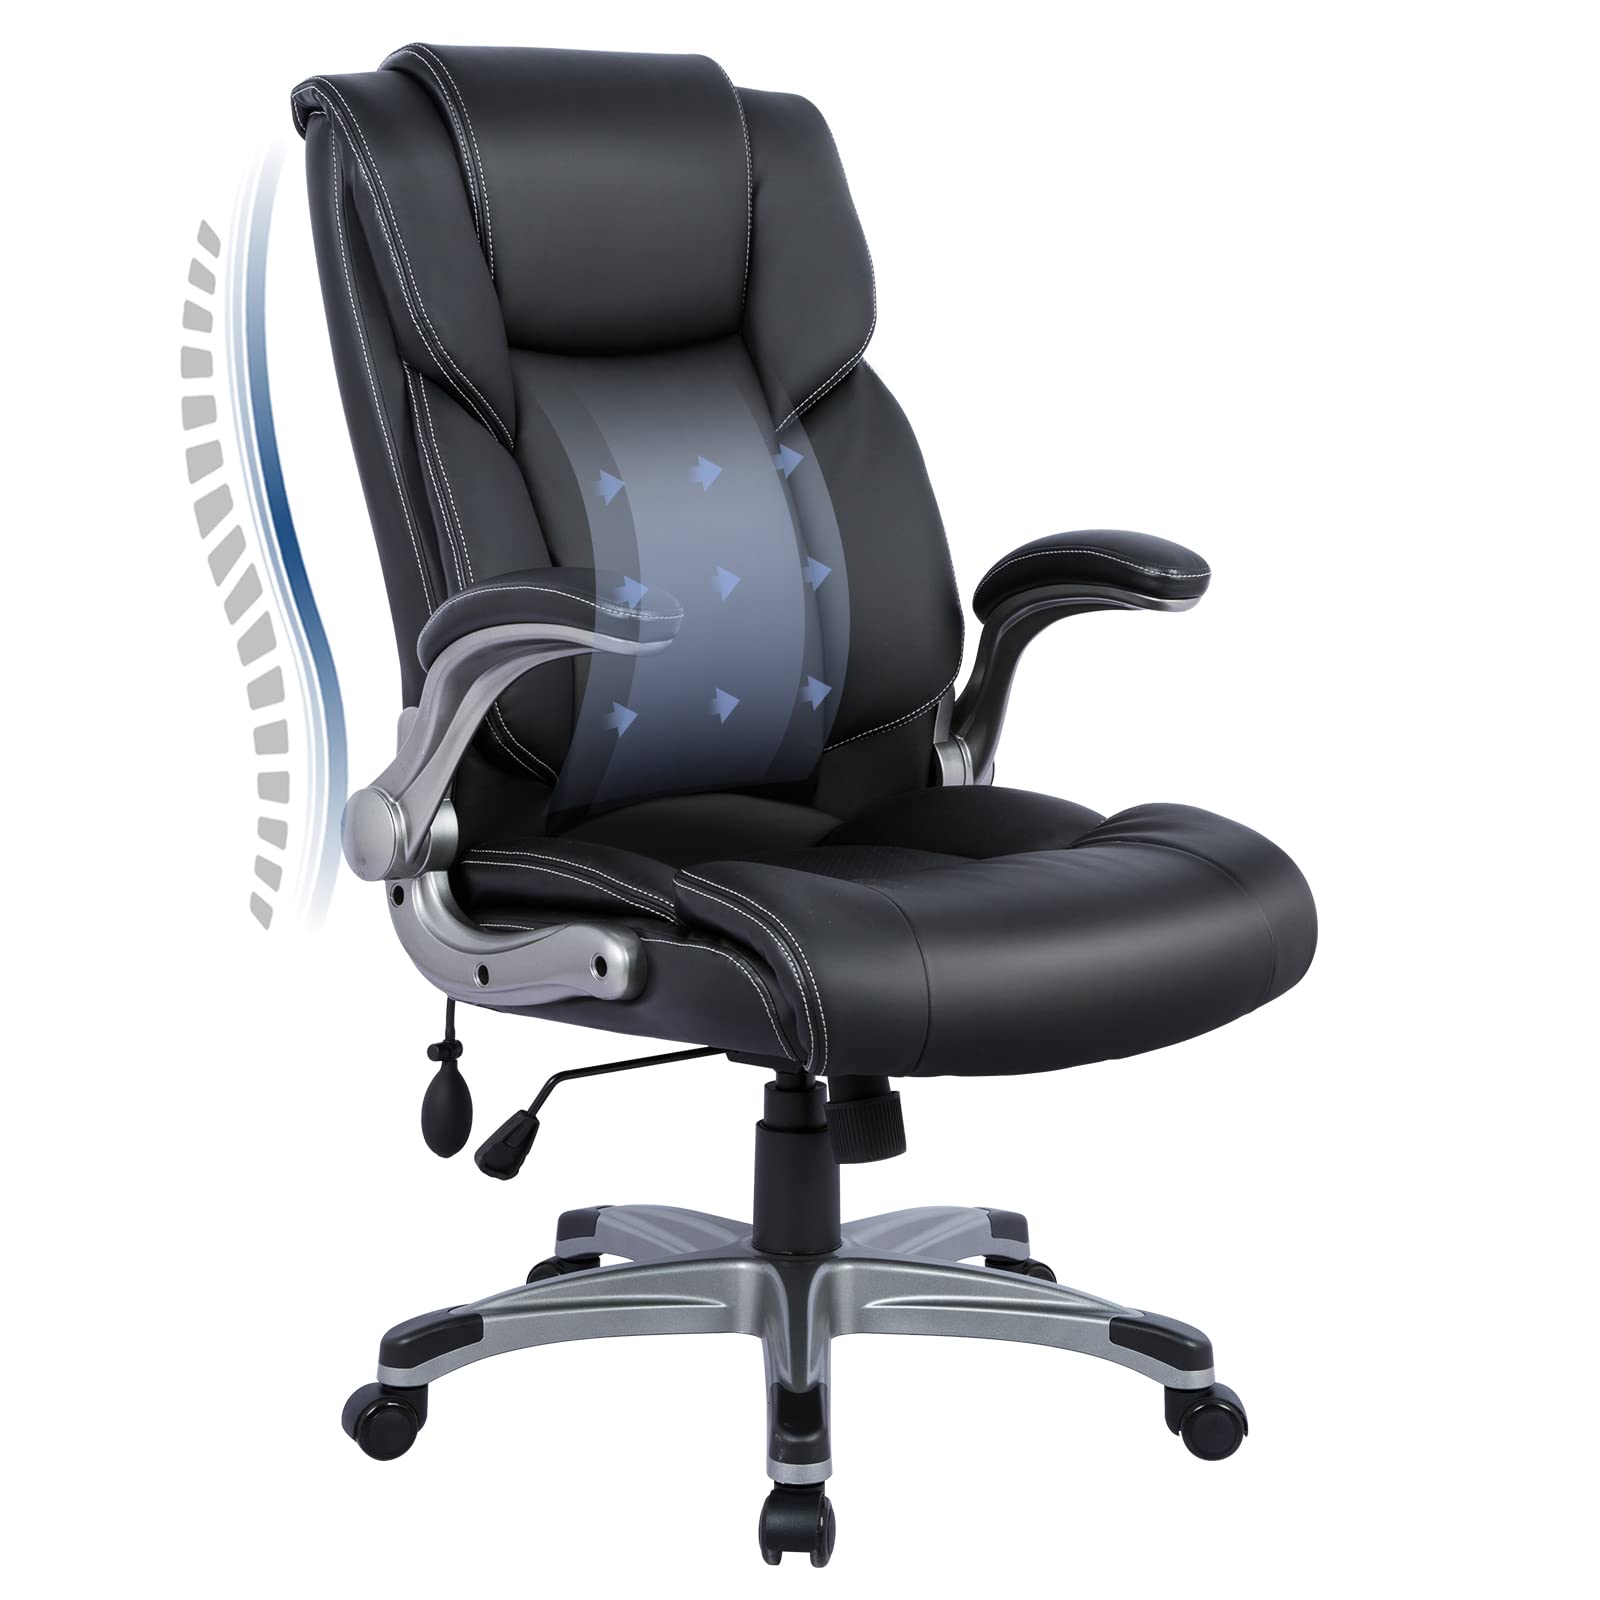 COLAMY Офисное кресло с высокой спинкой - Эргономичное ...